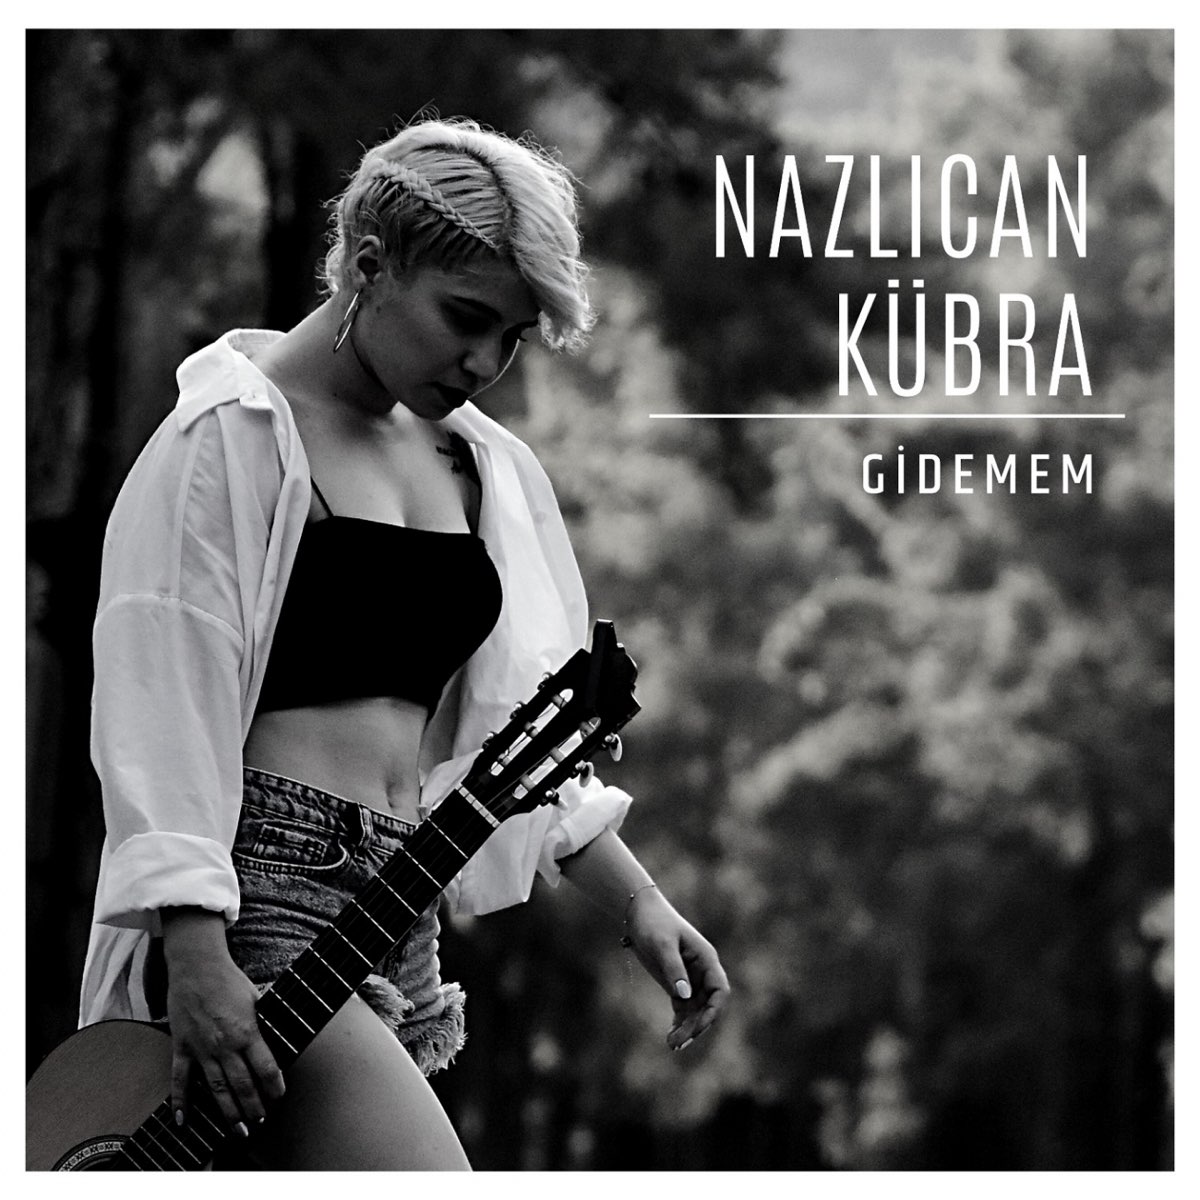 Gidemem - Single - Album by Nazlıcan Kübra - Apple Music